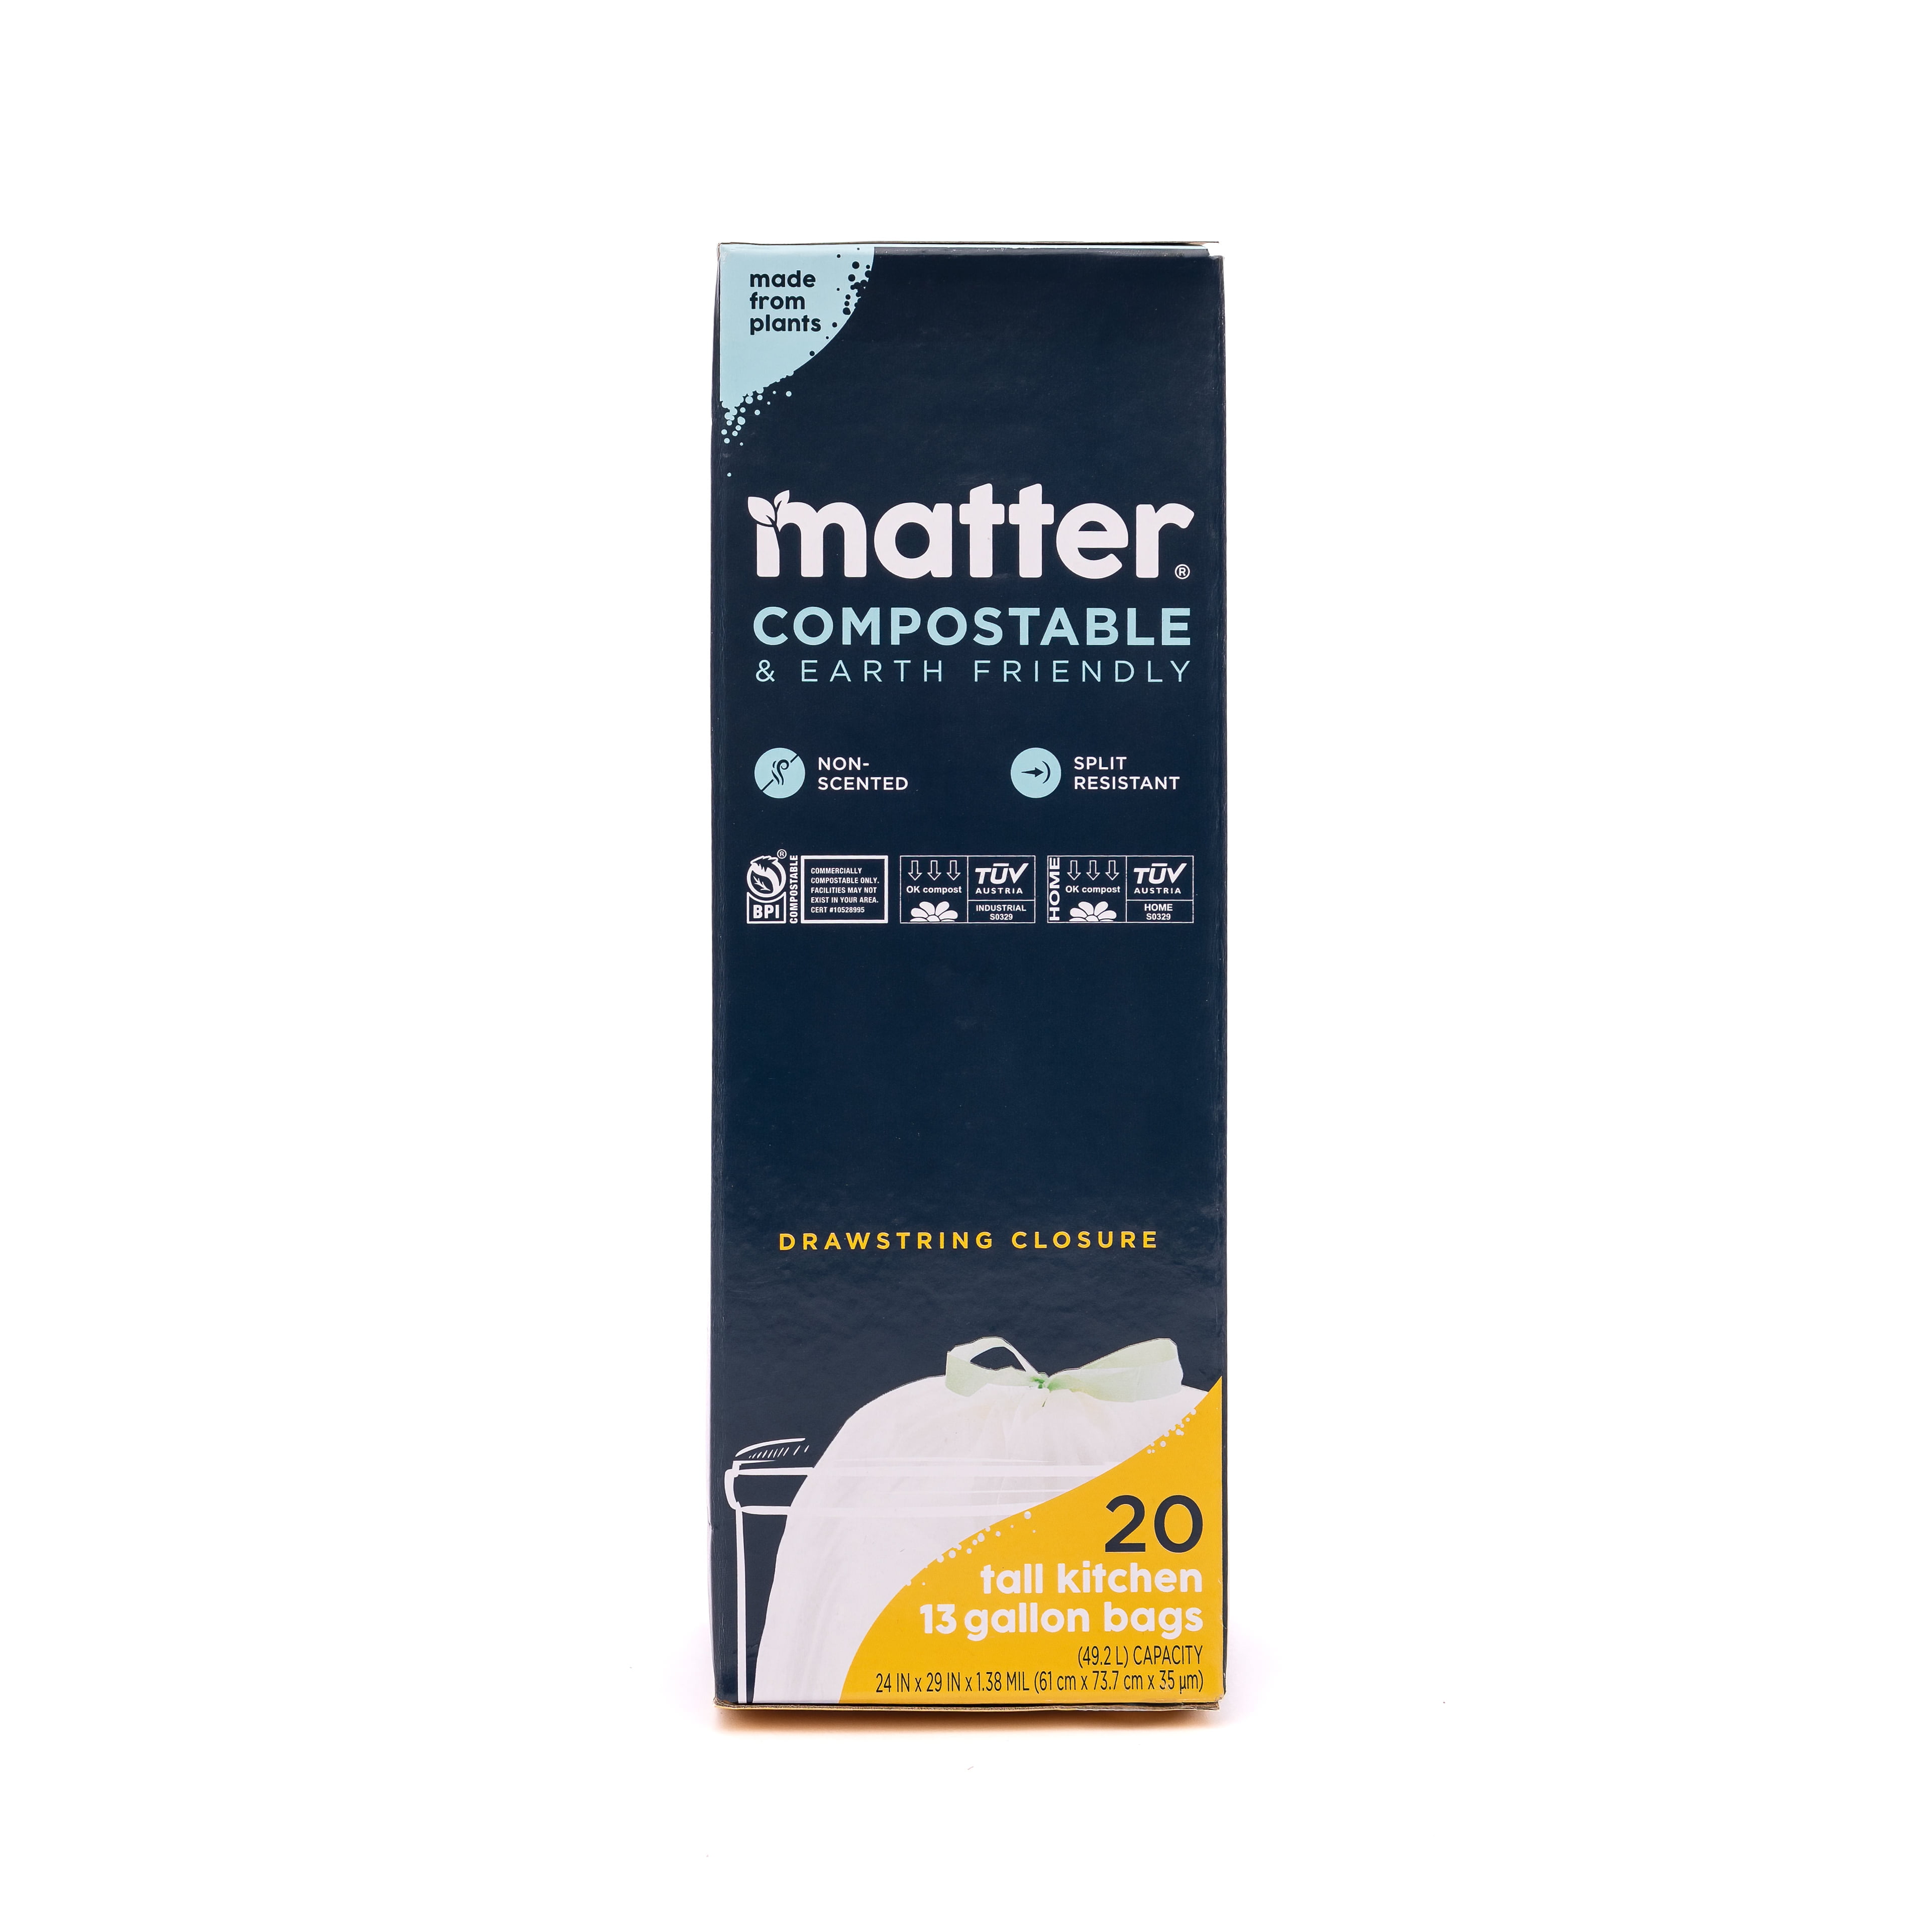 Matter Compostable Quart Bags - 50 Count – Shop Matter Products